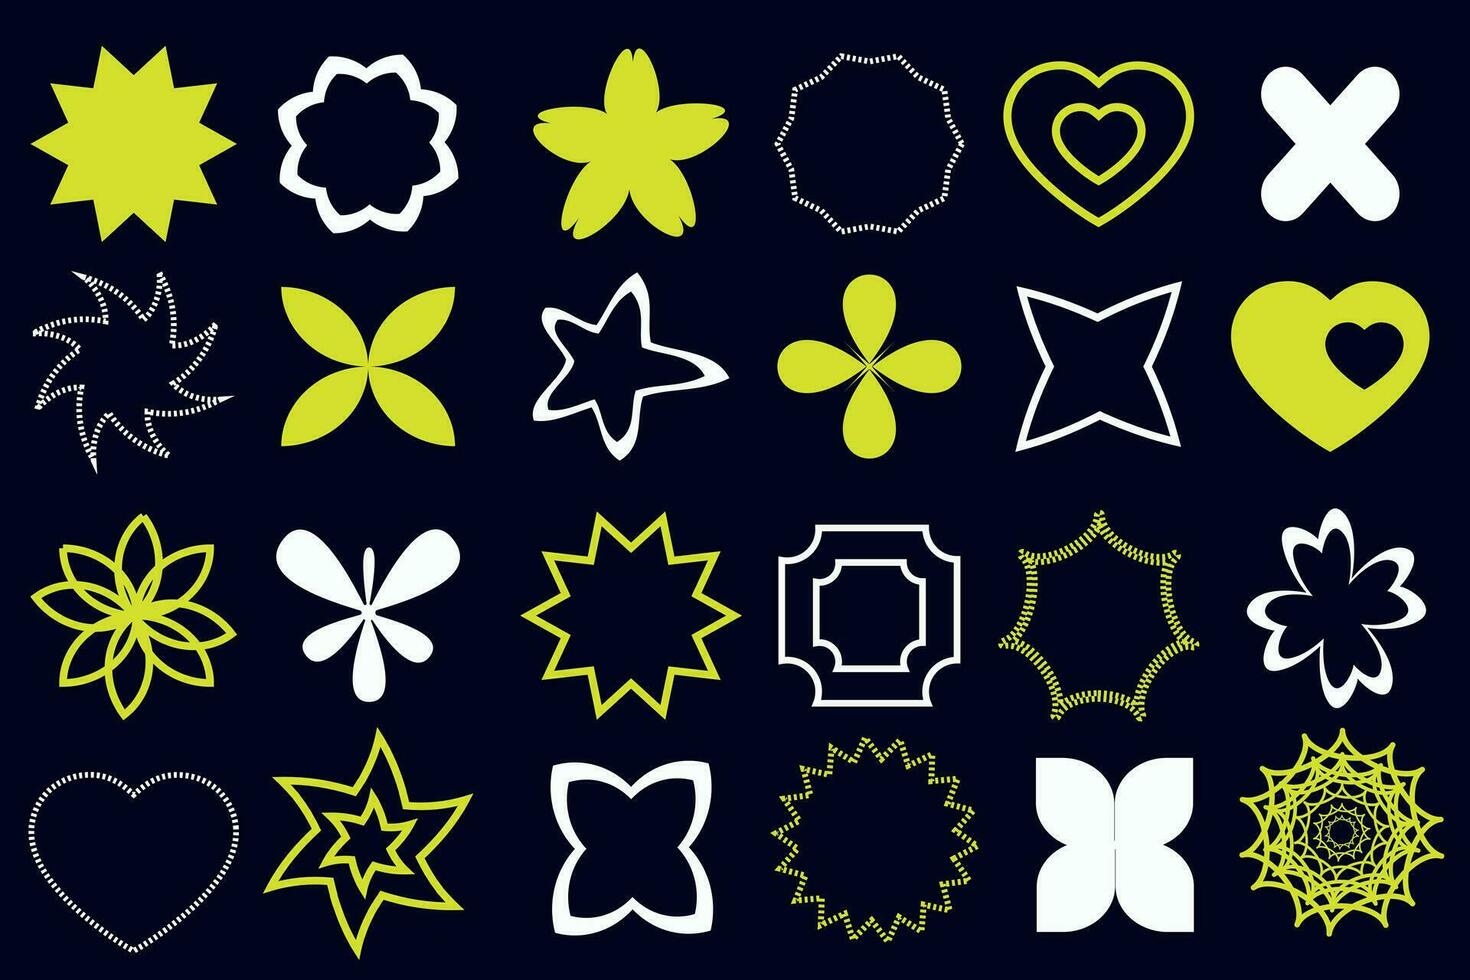 conjunto brutalista formas y simbolos colección de geométrico y resumen cruces y estrellas. modelo para publicidad, web, social medios de comunicación vector